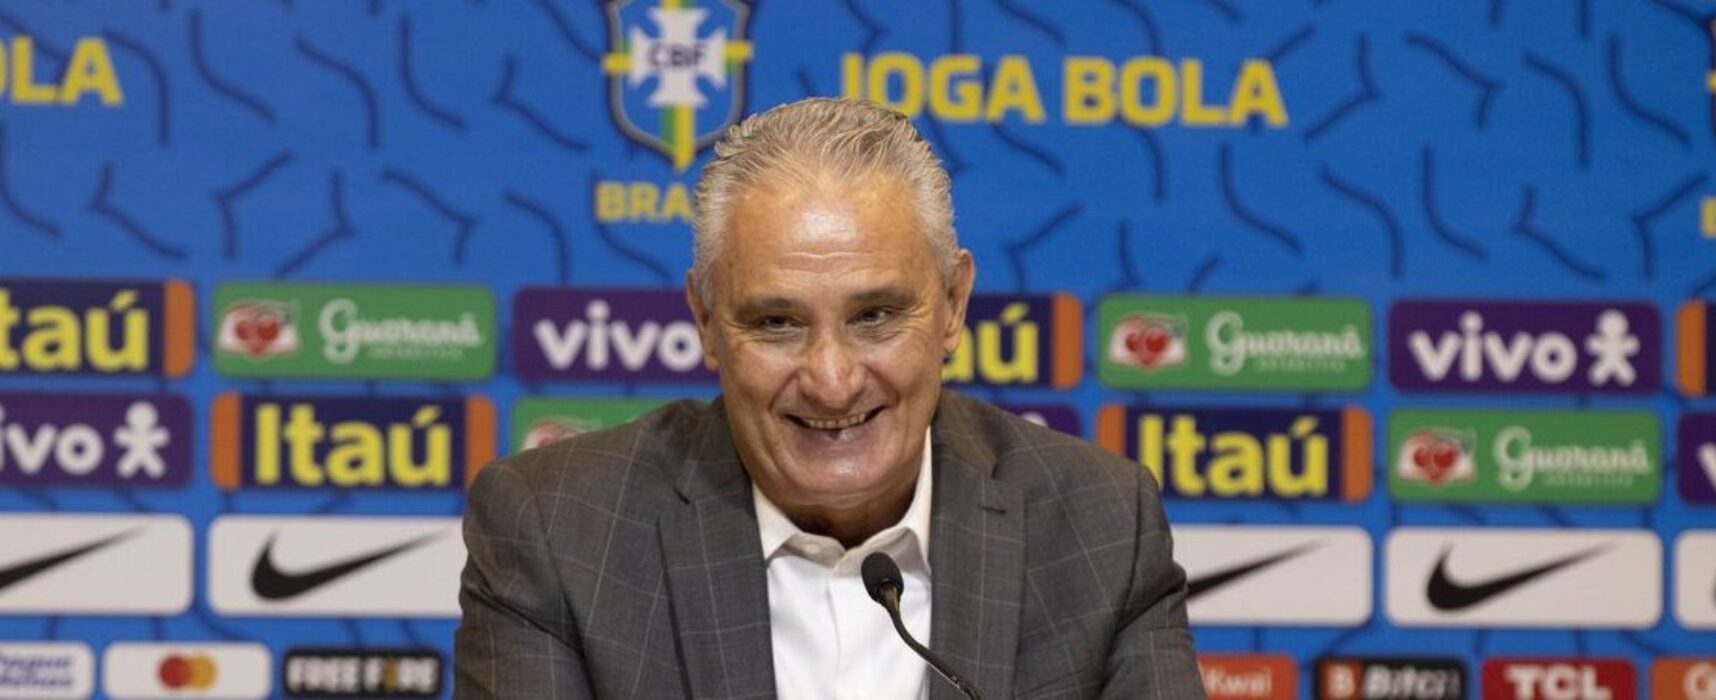 Brasil encara a Tunísia nesta terça no último amistoso antes da Copa